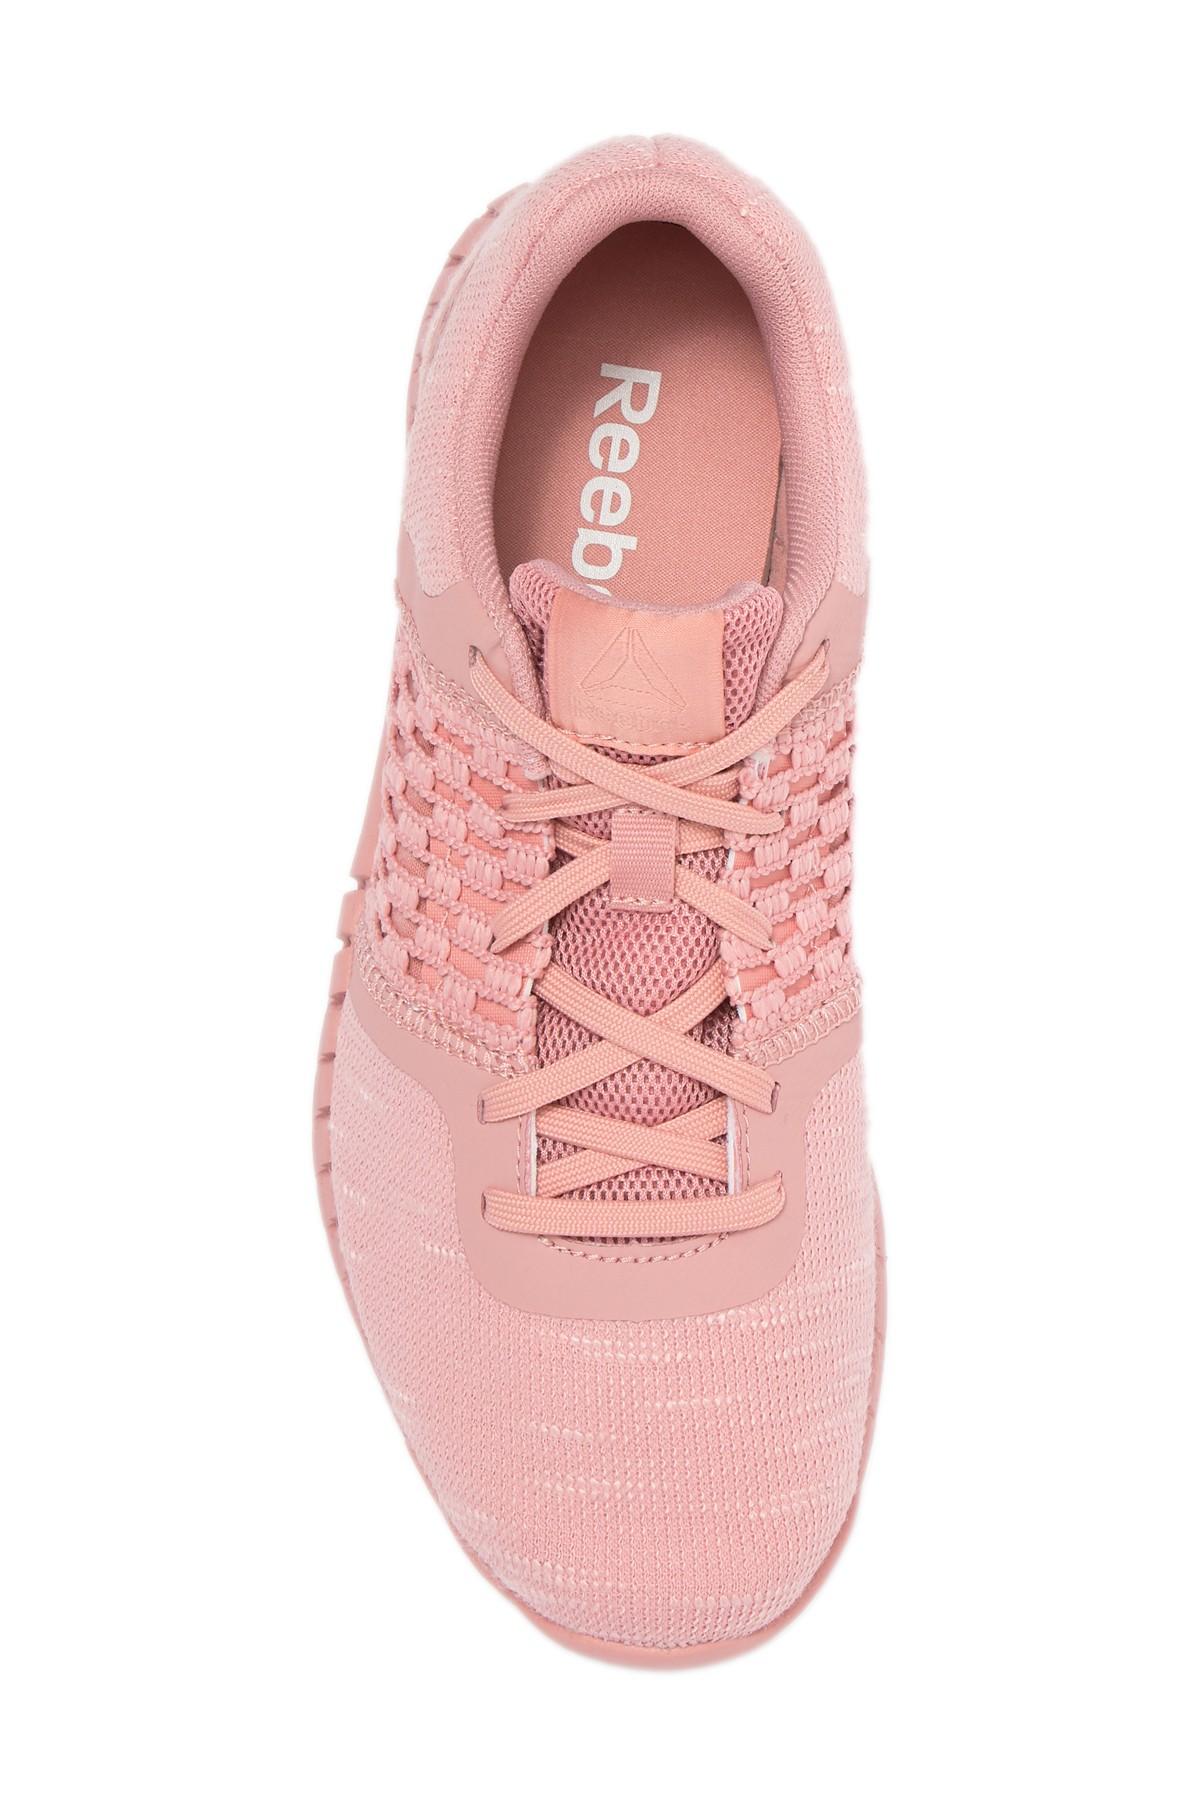 Reebok Rubber Print Run Dist Sneaker in Pink - Lyst